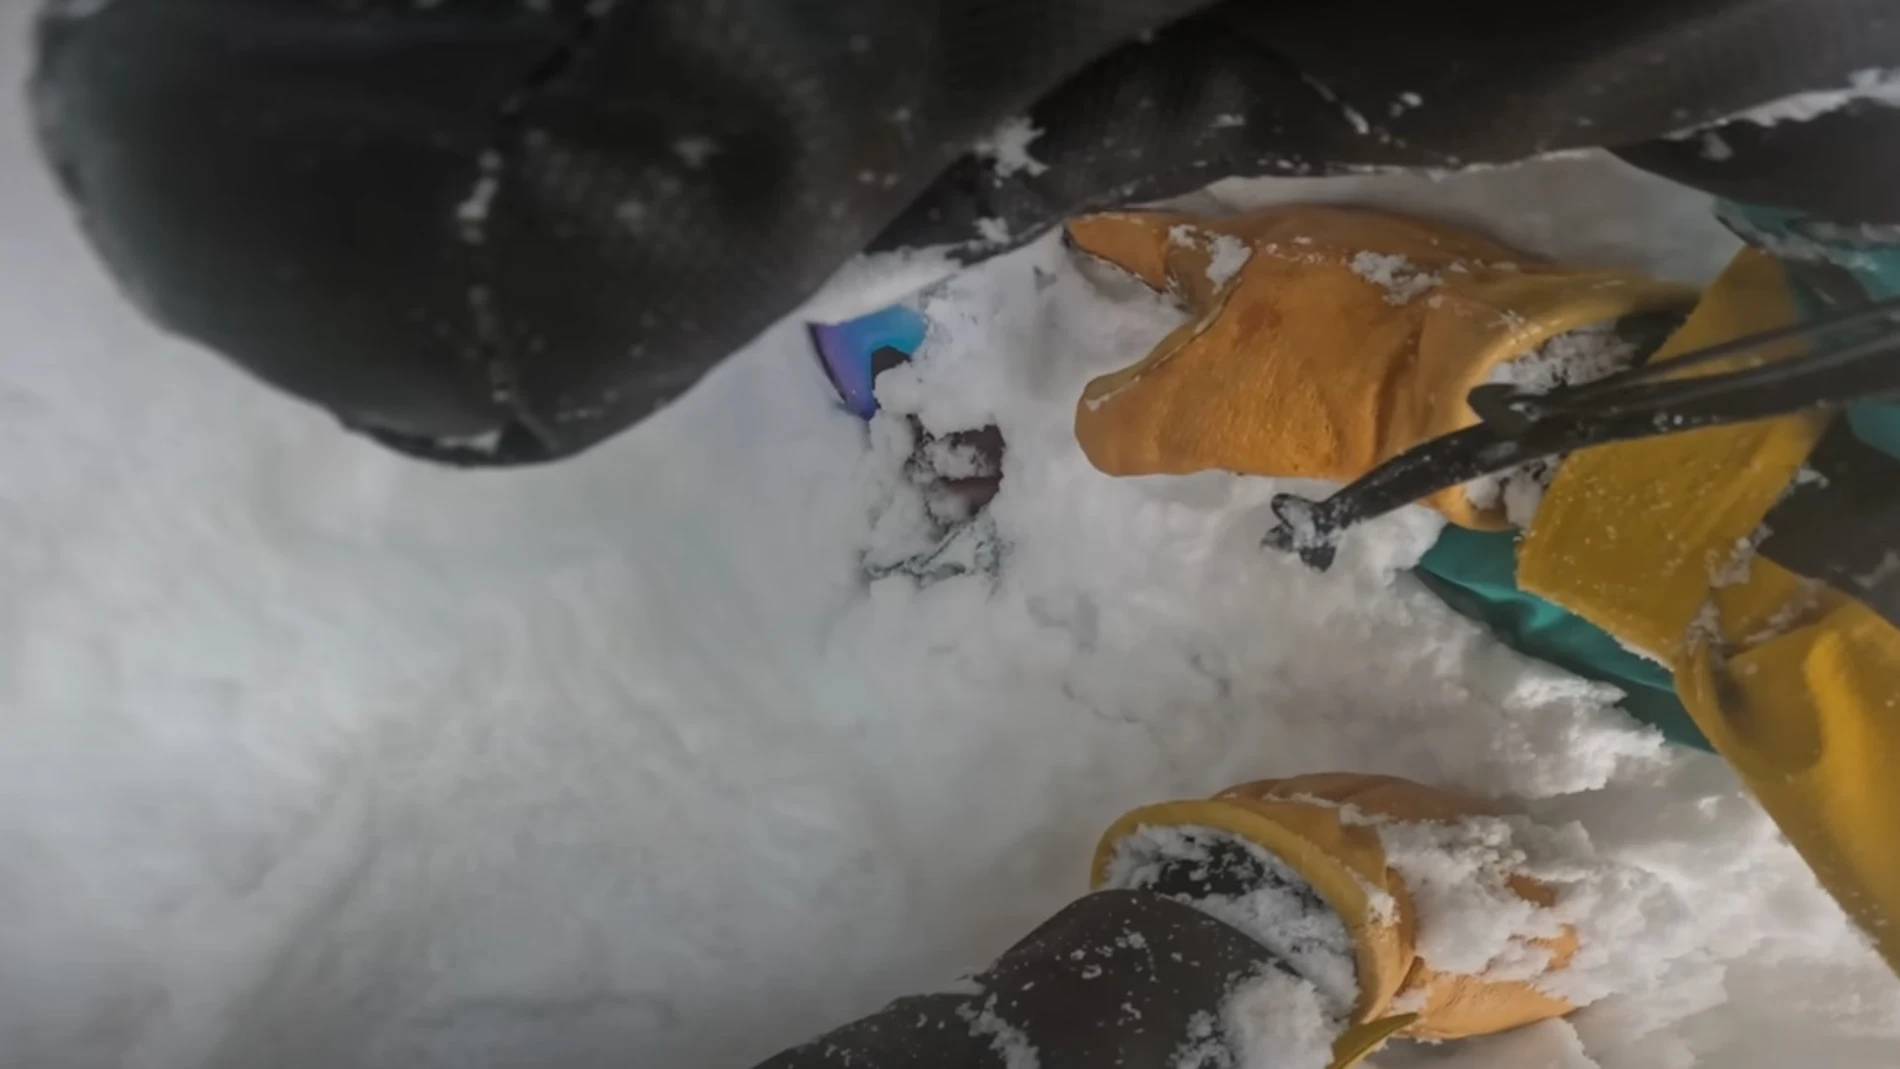 Una imagen del rescate de un snowboarder por Francis Zuber